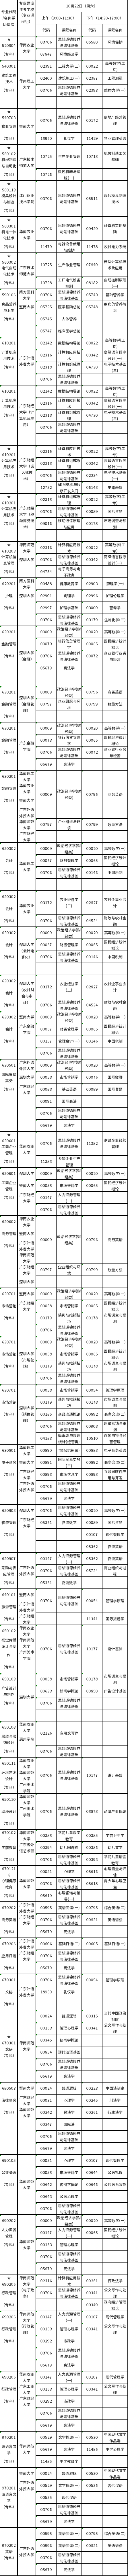 广东2022年10月22日自考(专科)专业及考试科目一览表